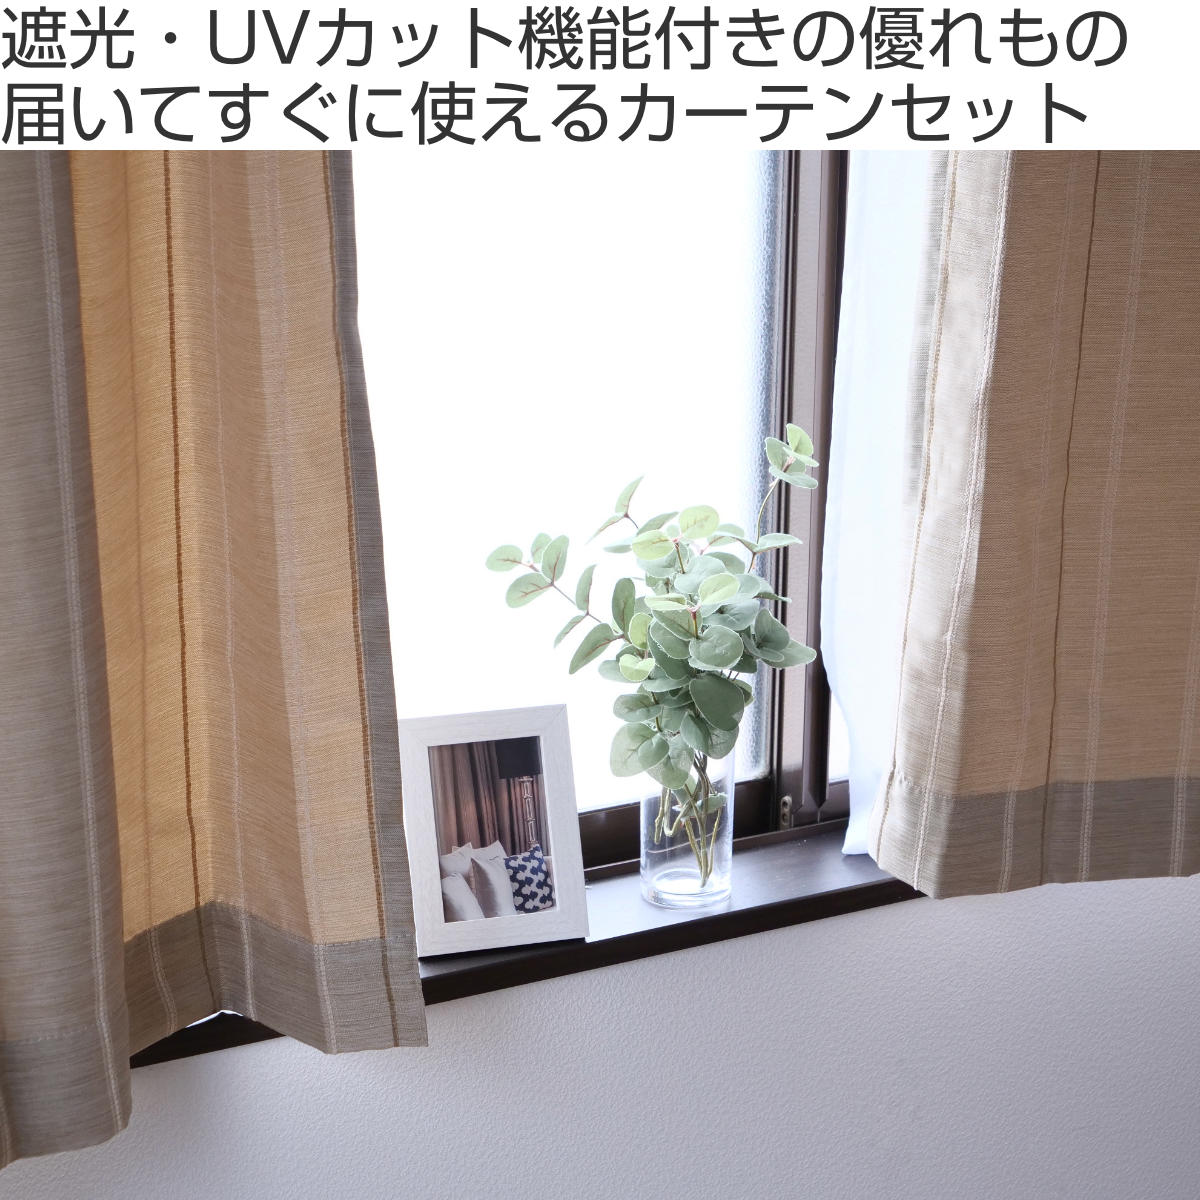 日本一掃ドレープカーテン (幅150cm×高さ190cm)の2枚セット 色-オリーブグリーン /無地 シンプル 国産 日本製 1級遮光 防炎 遮熱 洗濯機で洗える 幅150cm用